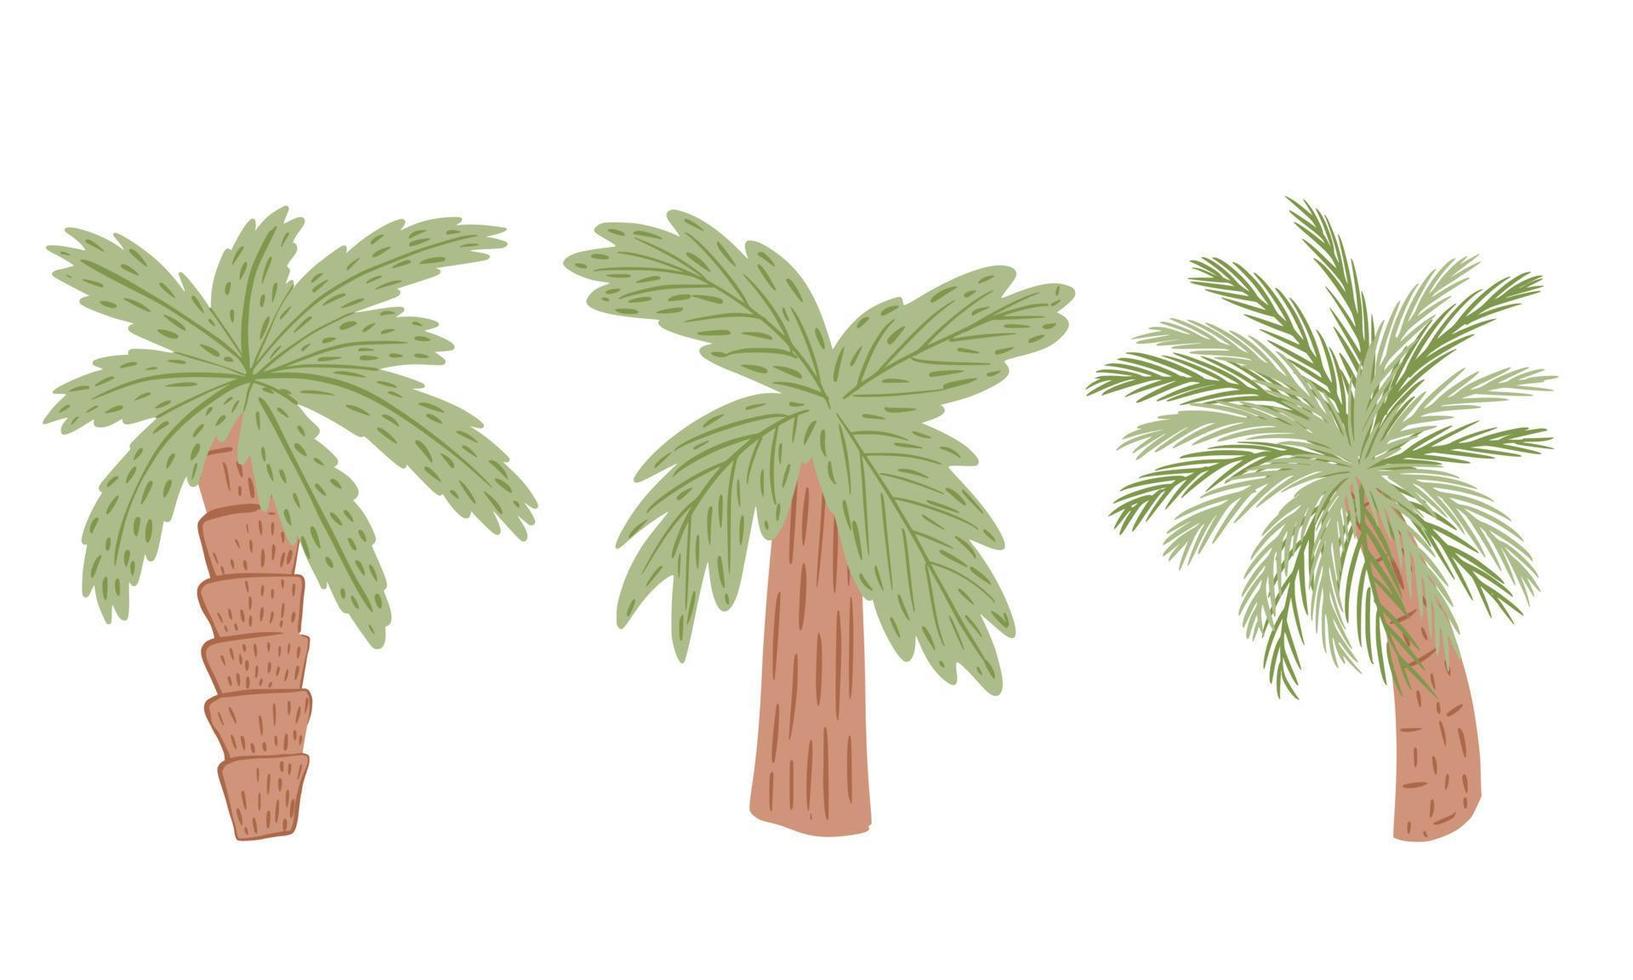 définir des palmiers isolés sur fond blanc. plante tropicale abstraite avec feuillage vert et tronc d'arbre brun. vecteur